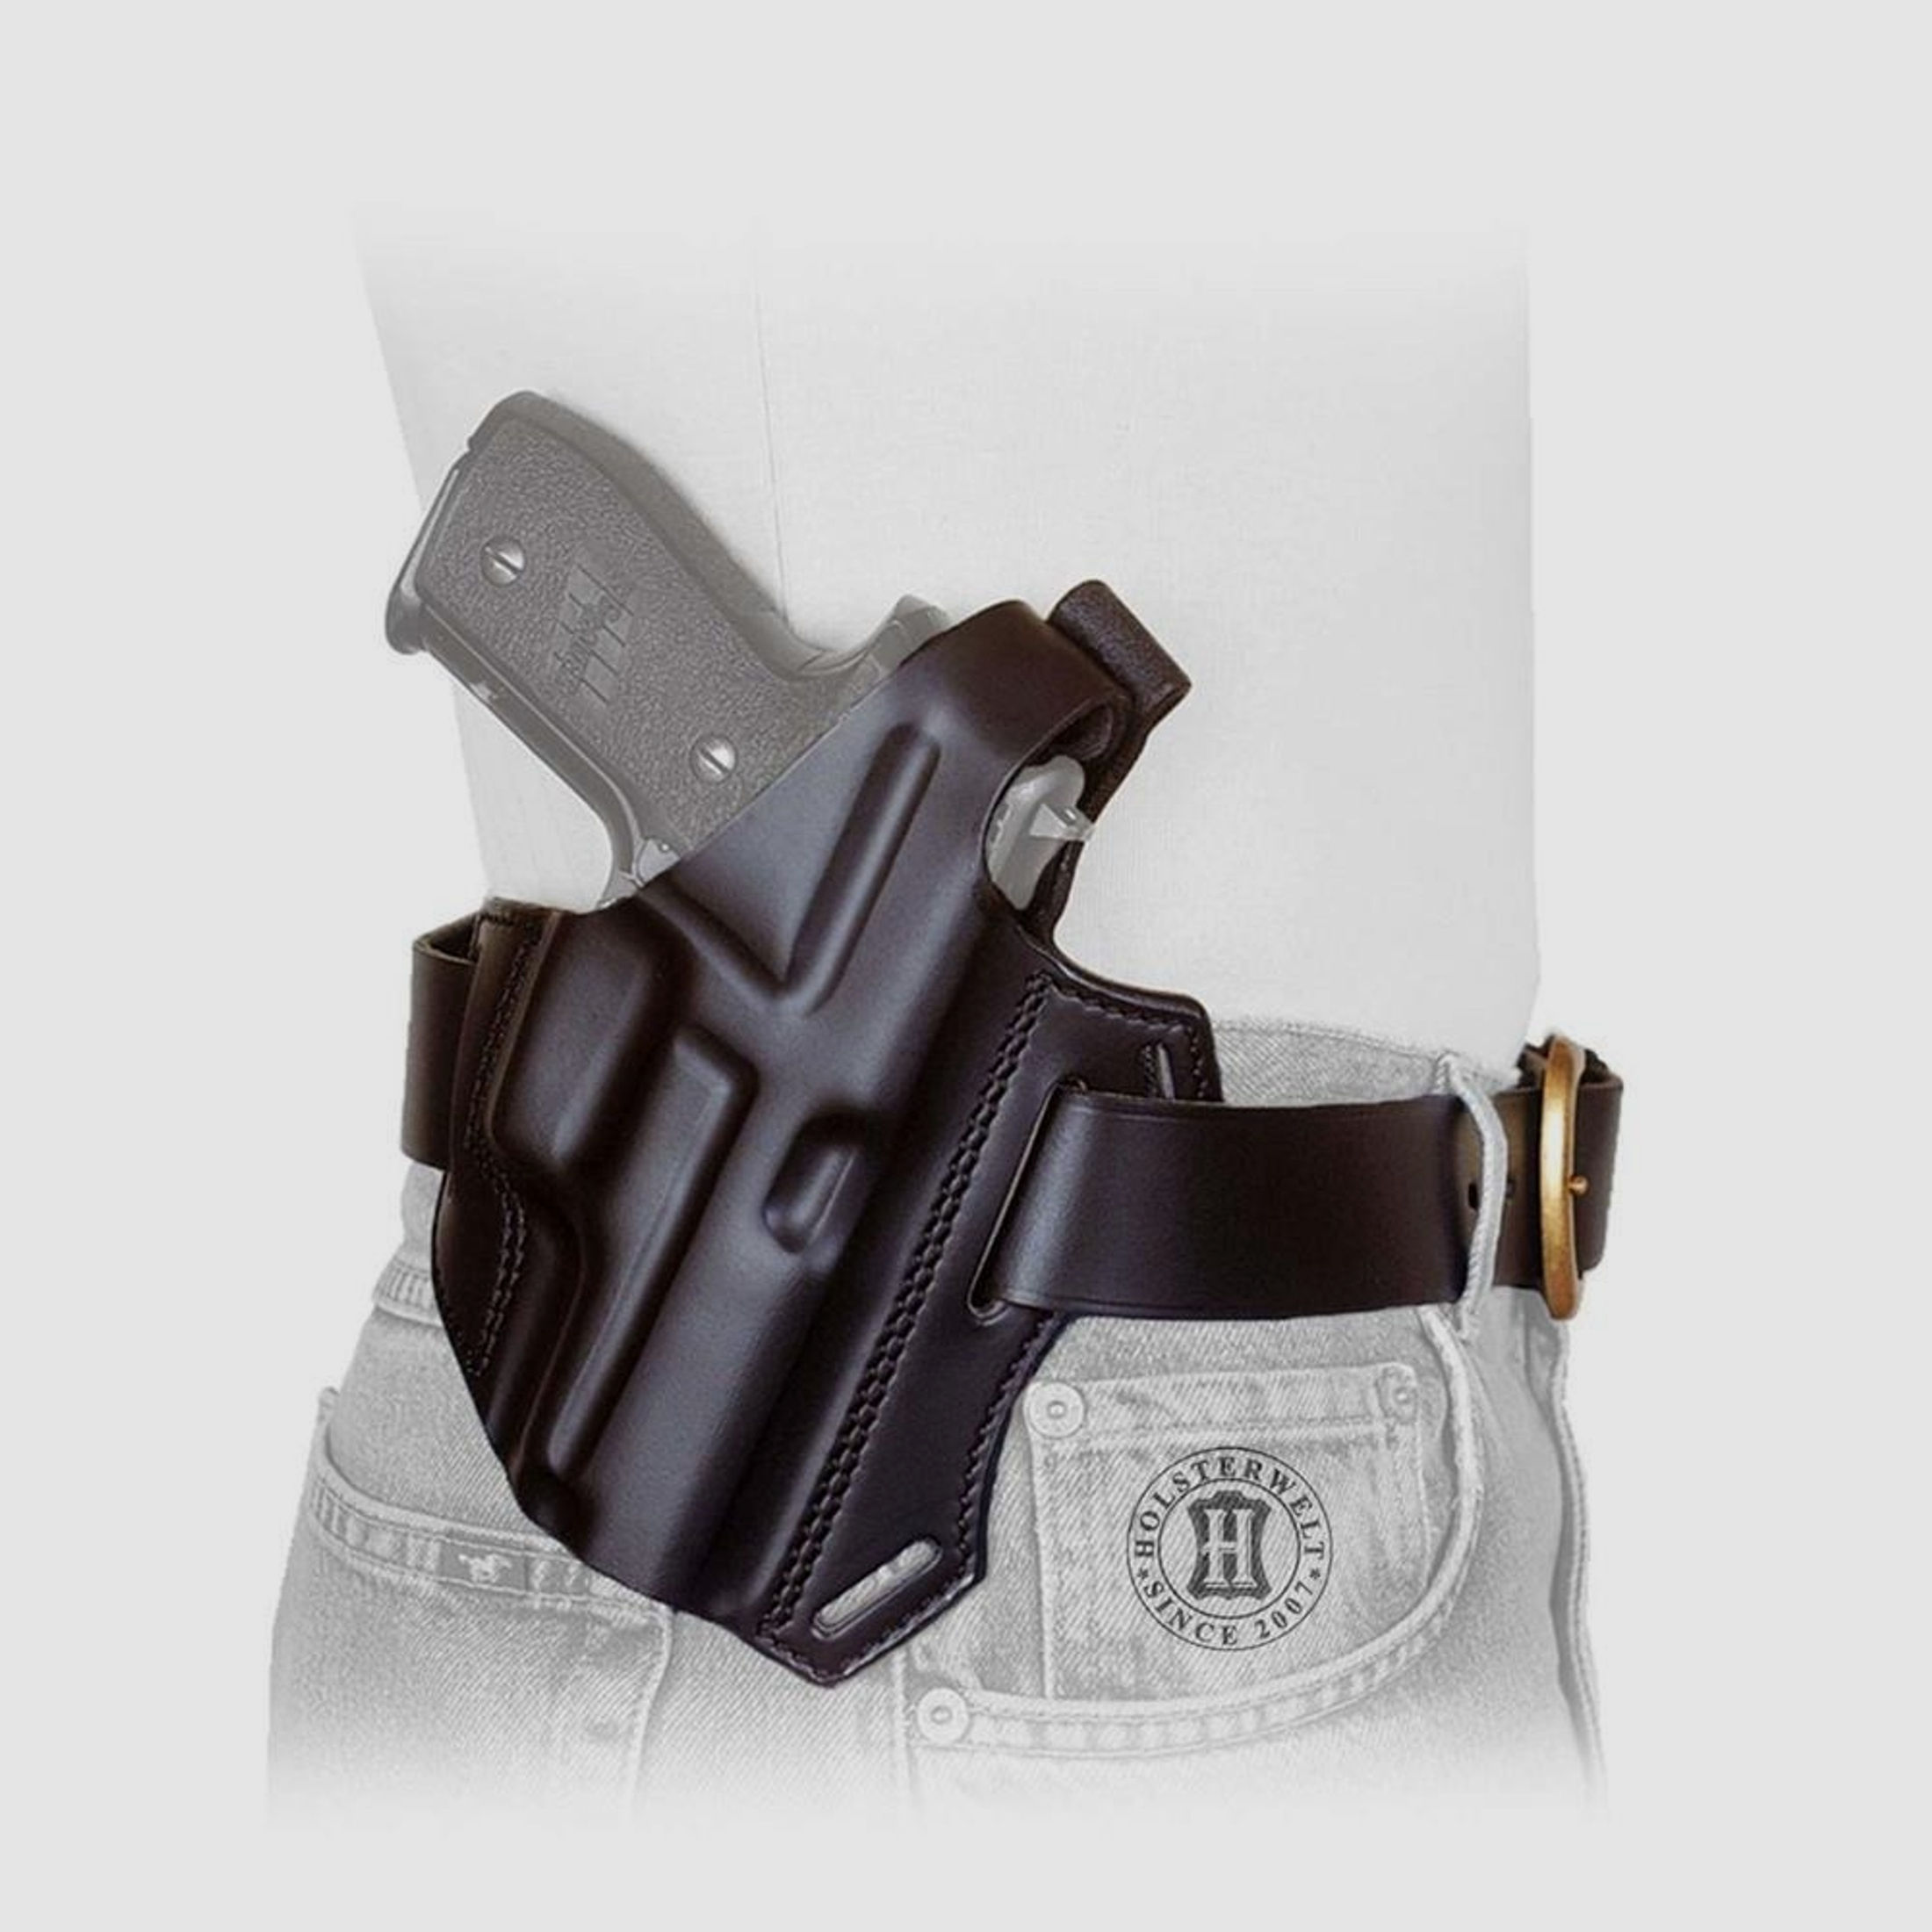 Gürtelholster / Schulterholster MULTI VARIO Glock 19/23,17/22,34/35, S&W 4506,1006,5904/06,-Schwarz-Rechtshänder